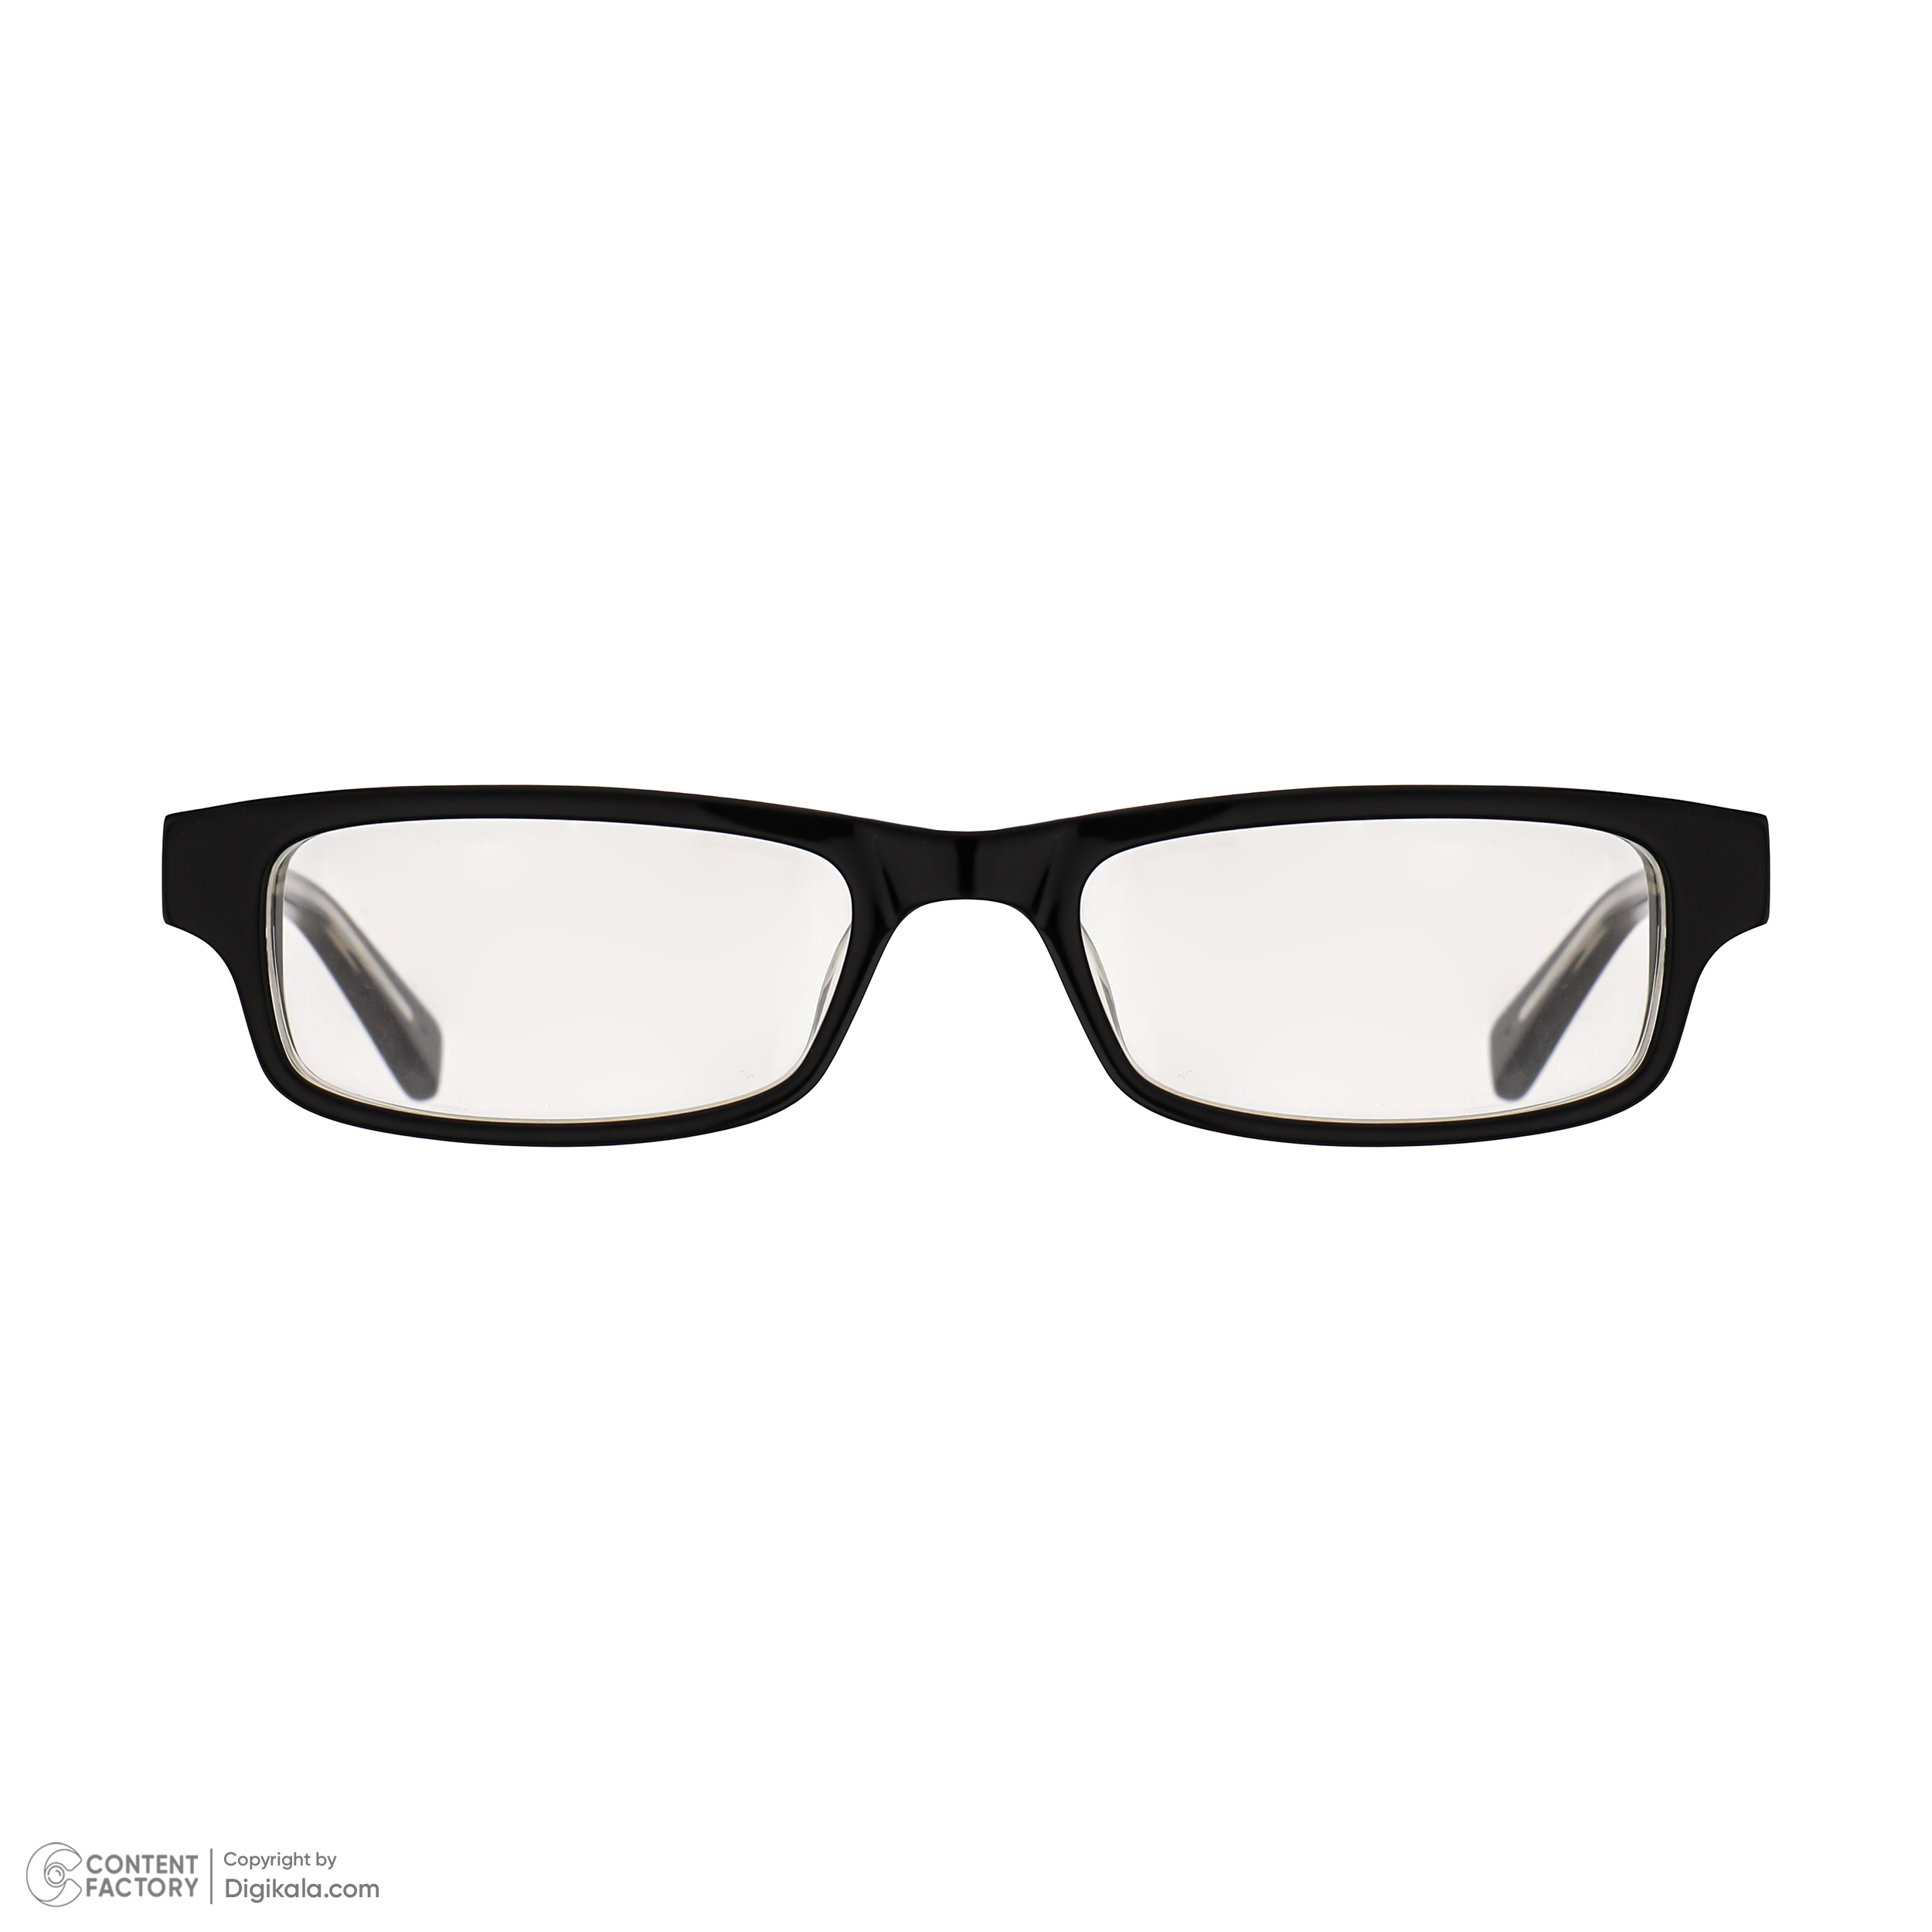 فریم عینک طبی نایکی مدل 5517-1 -  - 6